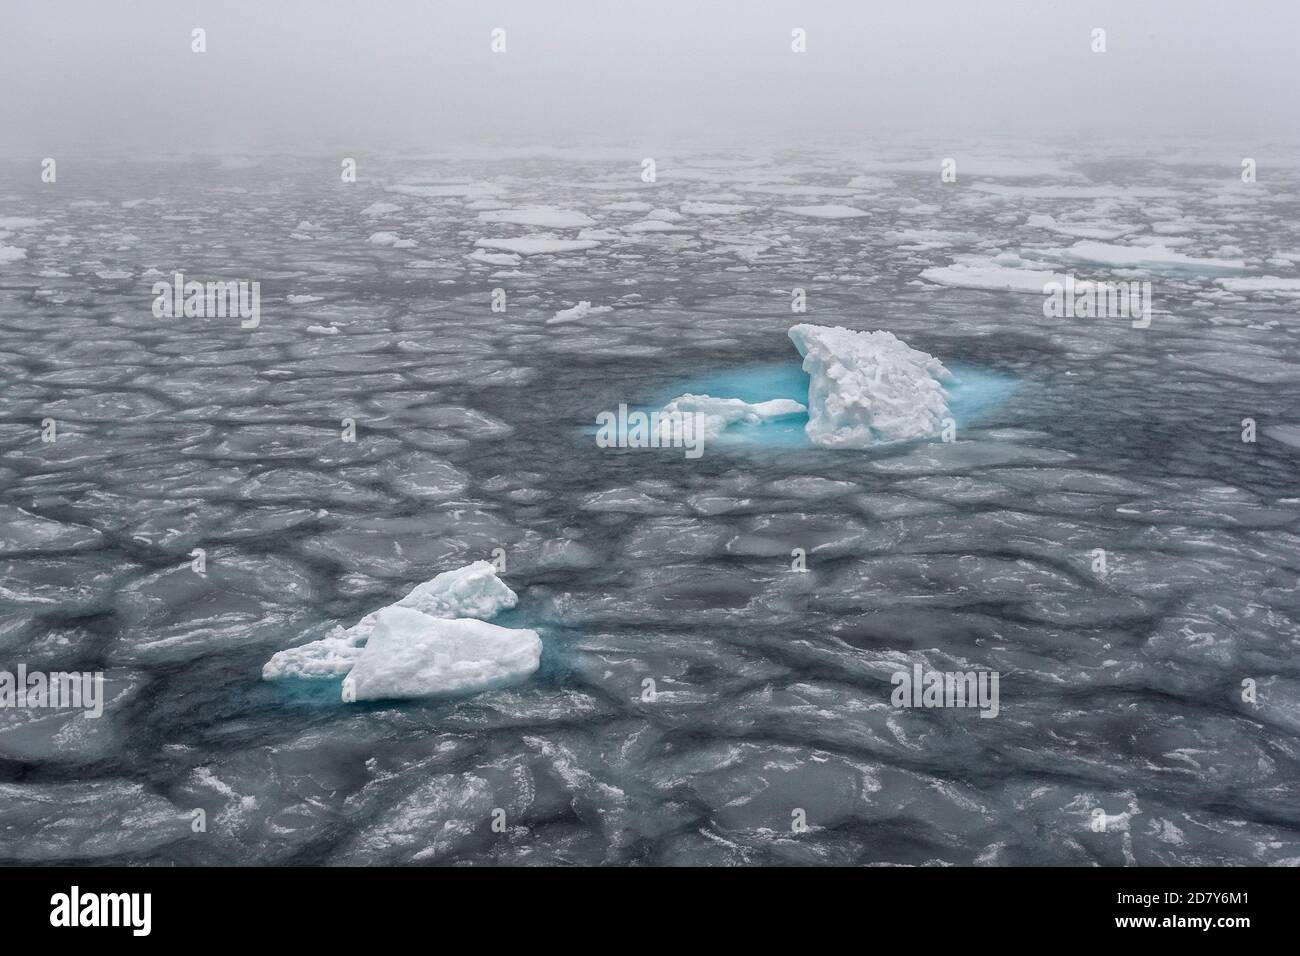 Dérive de glace dans l'océan Arctique à Svalbard. La banquise flotte en tant que calotte glaciaire sur la mer dans le cercle arctique au nord de Svalbard, dans le Spitsbergen. Banque D'Images